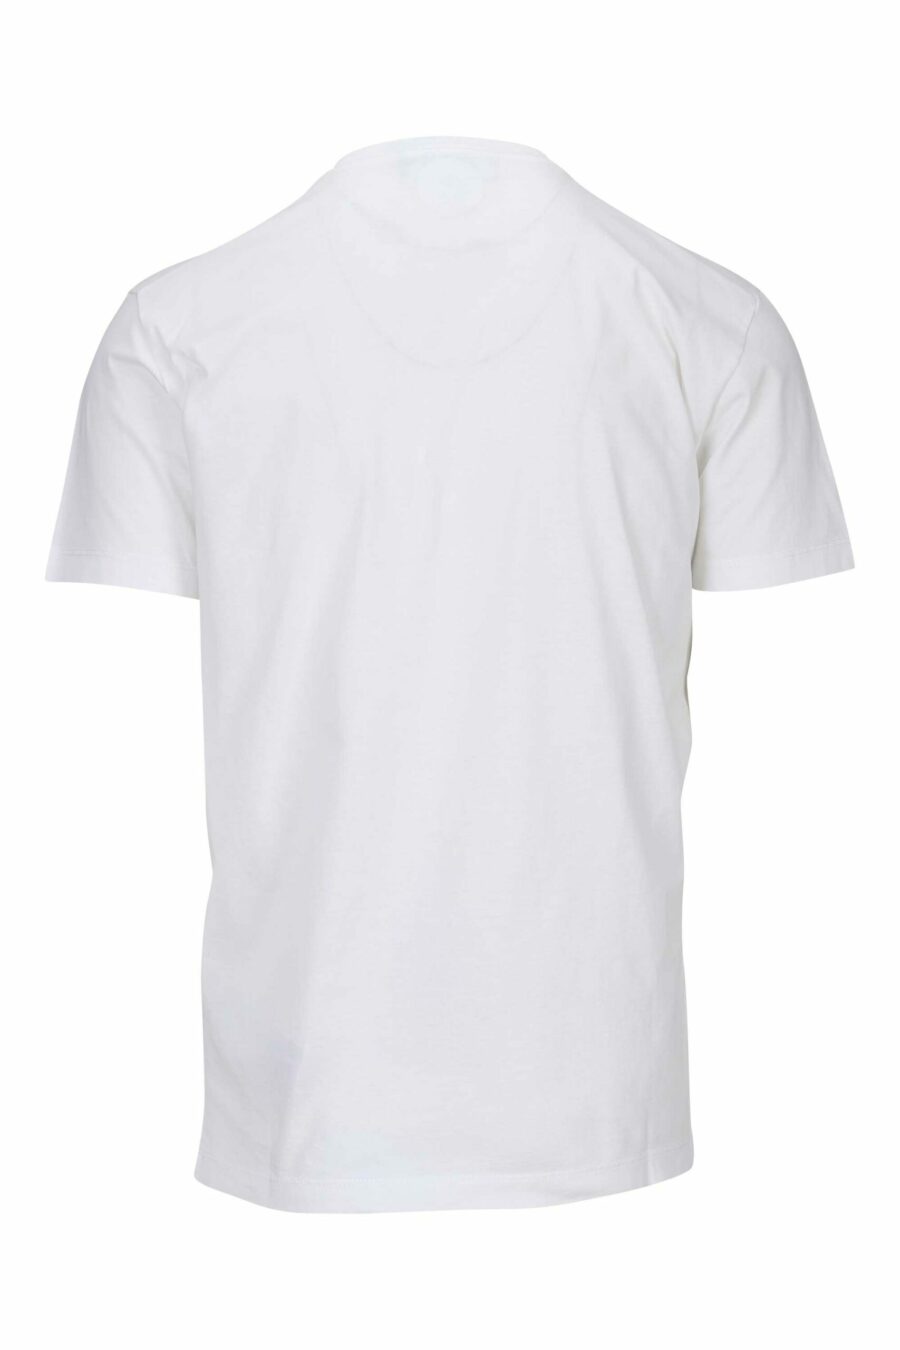 T-shirt branca com carimbos do logótipo "icon" - 8054148362676 1 à escala